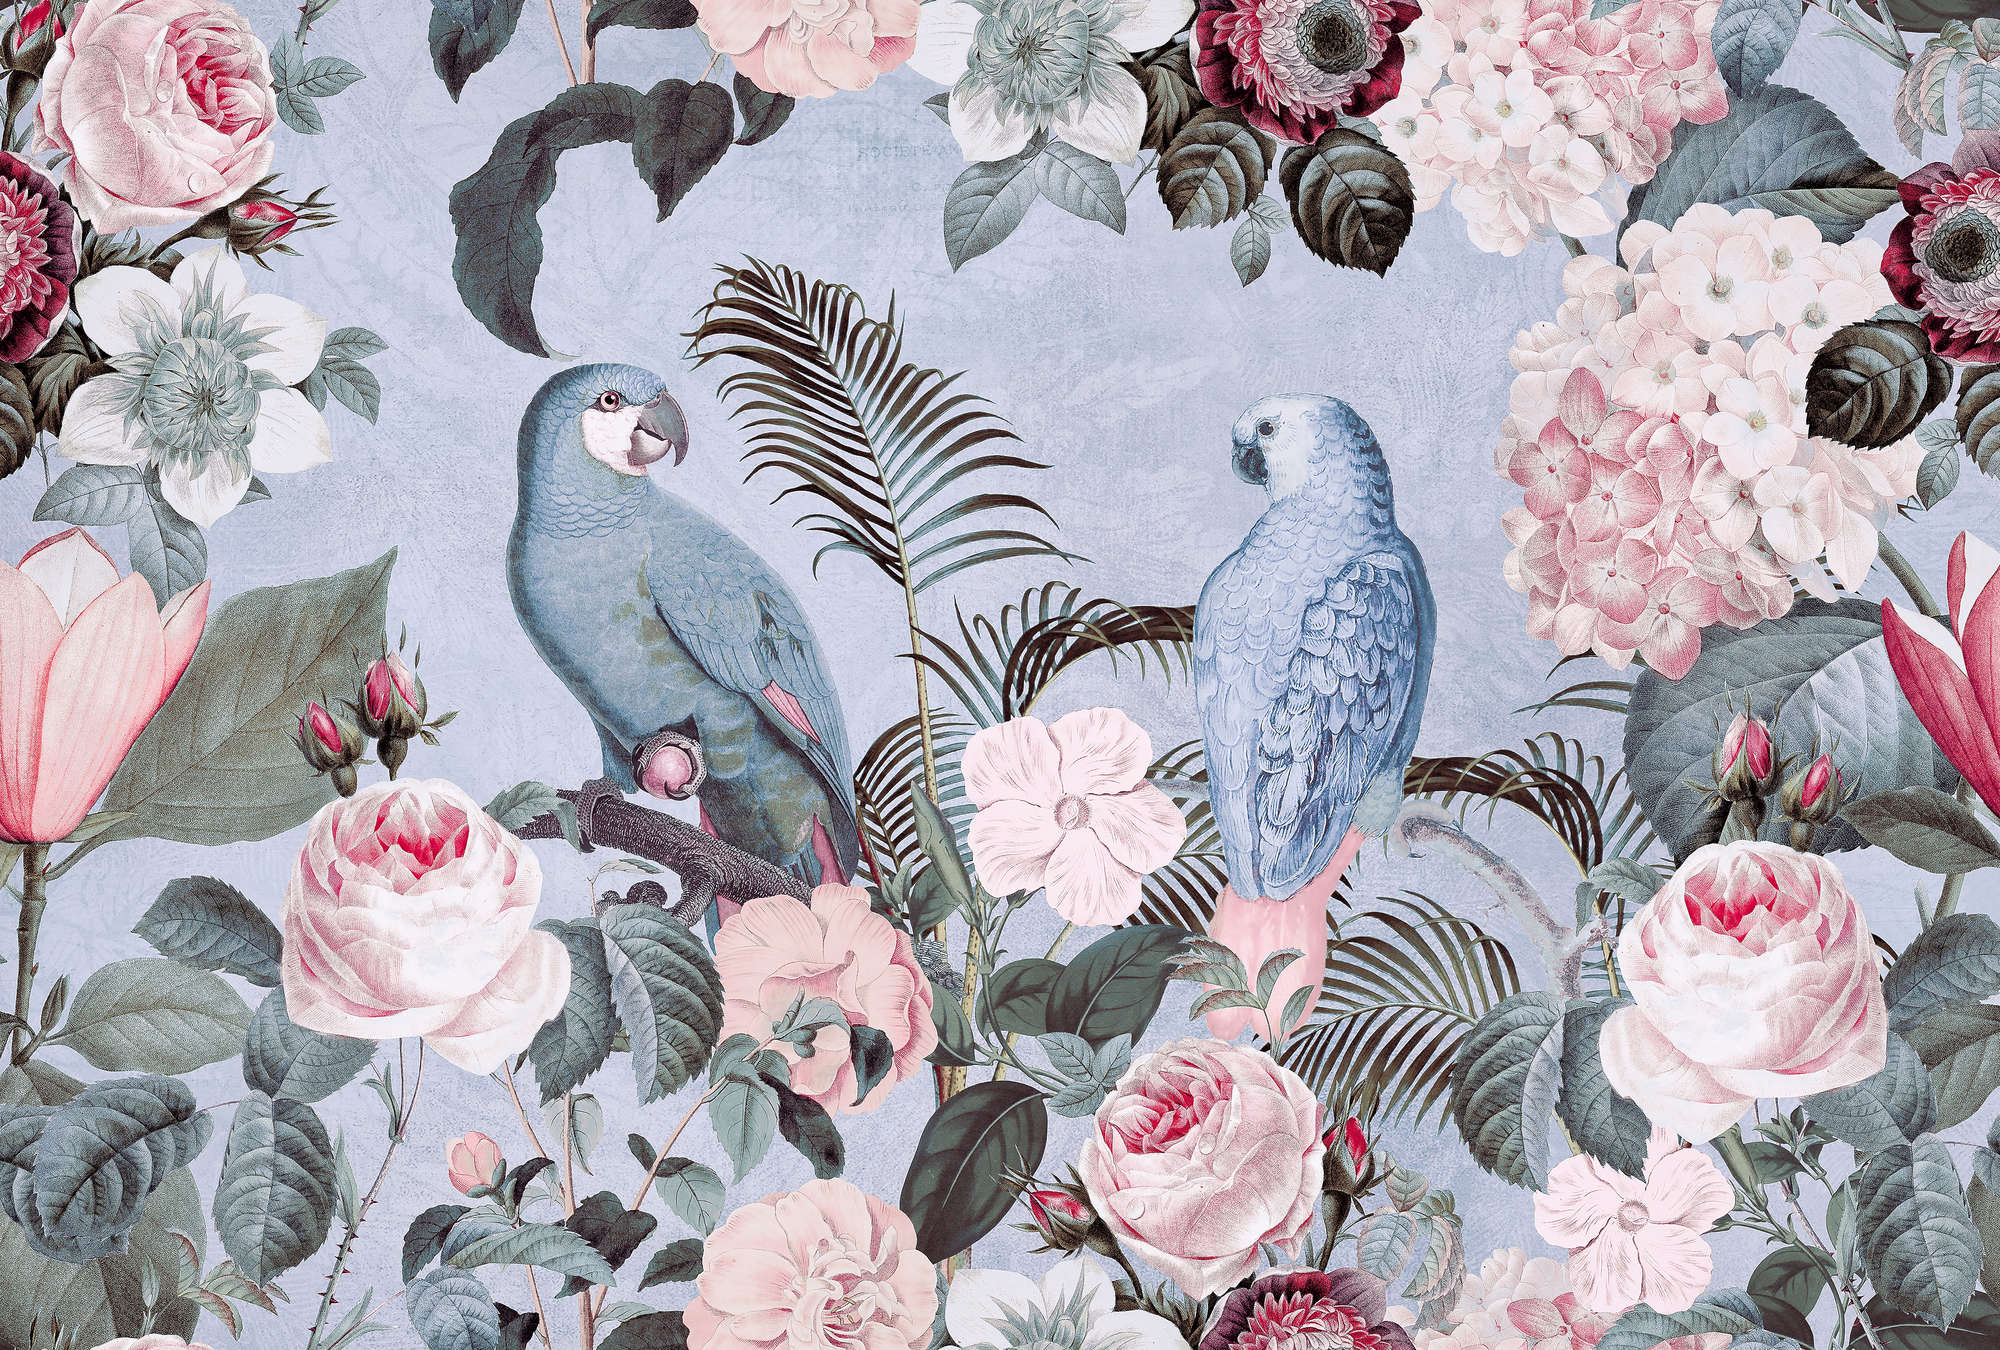             Photo wallpaper parrots rendezvous with flowers design - Blue
        